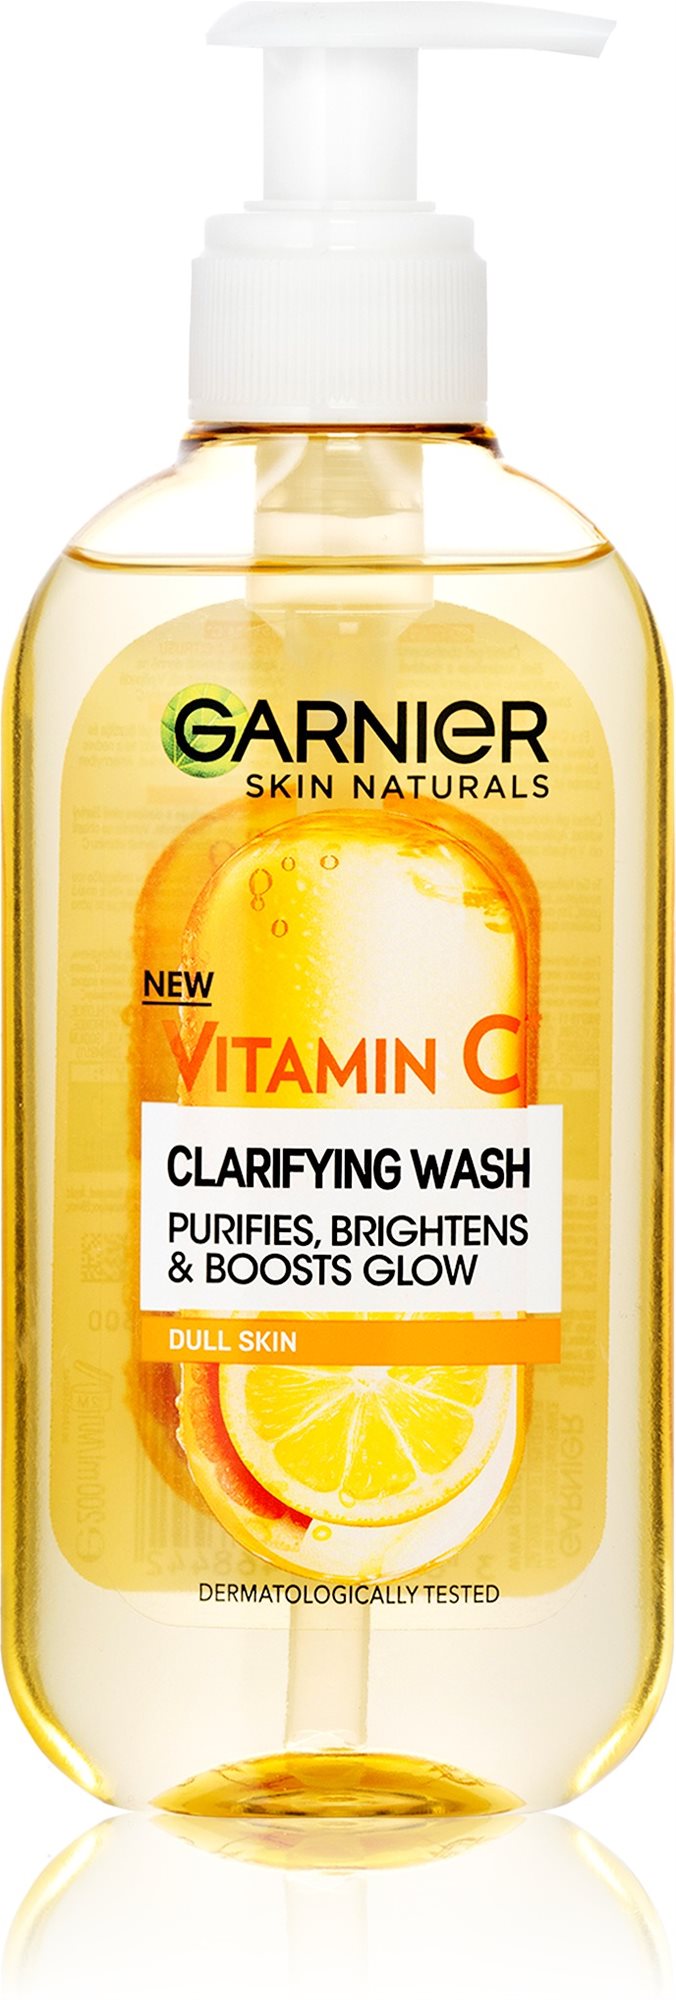 GARNIER Skin Naturals világosító, tisztító gél C-vitaminnal, 200 ml